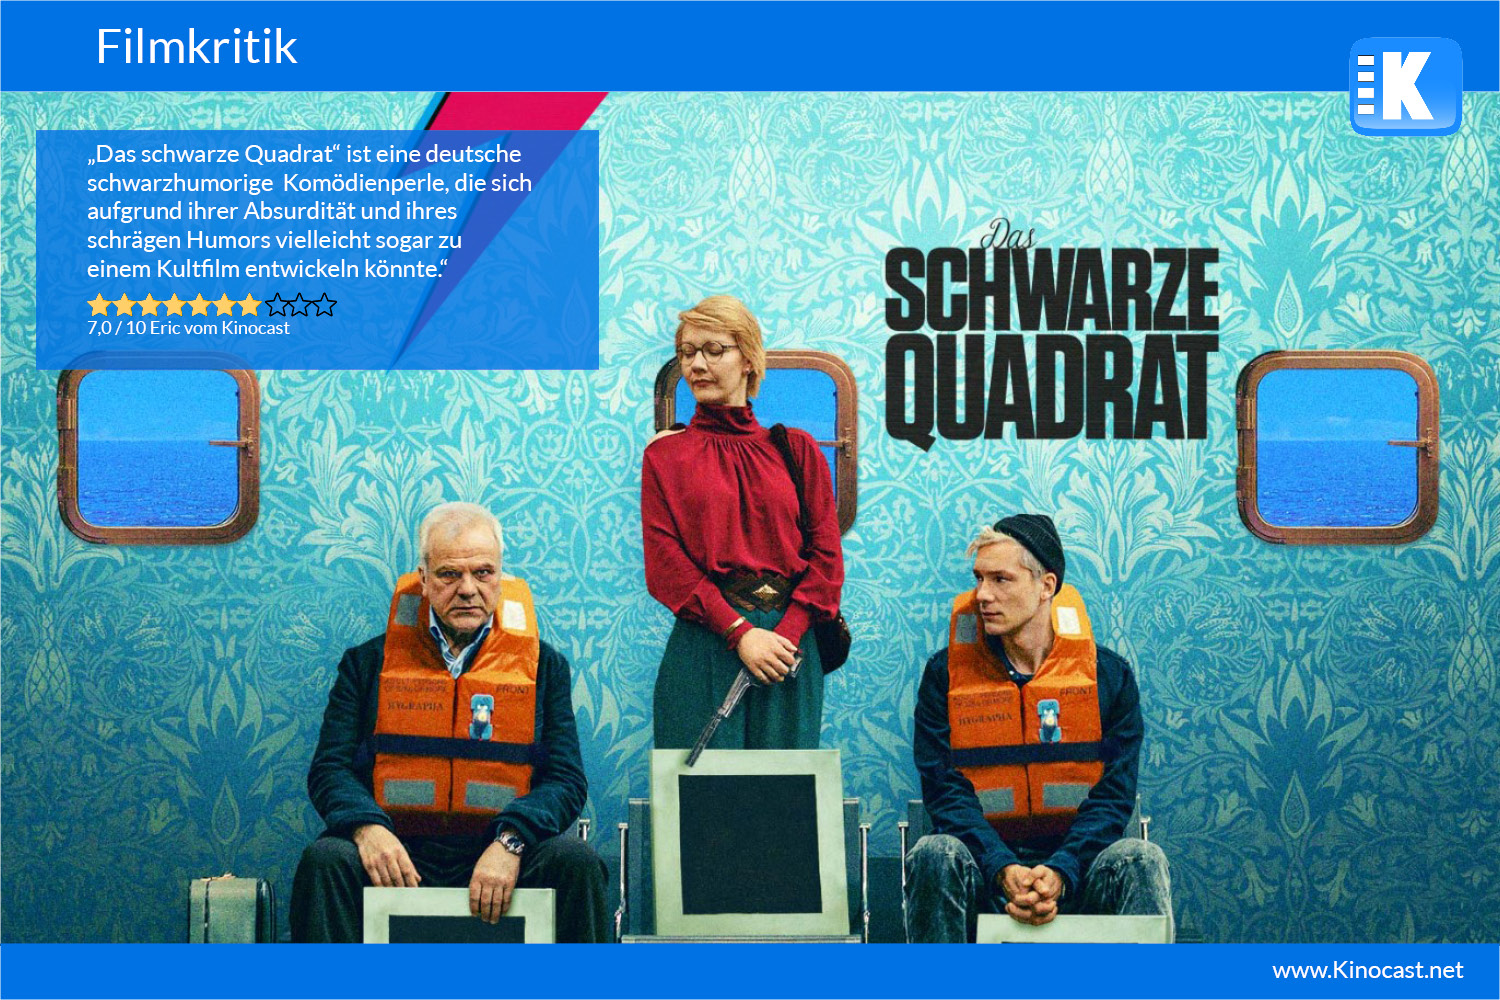 Das schwarze Quadrat Kinocast Filmkritik Deutsch